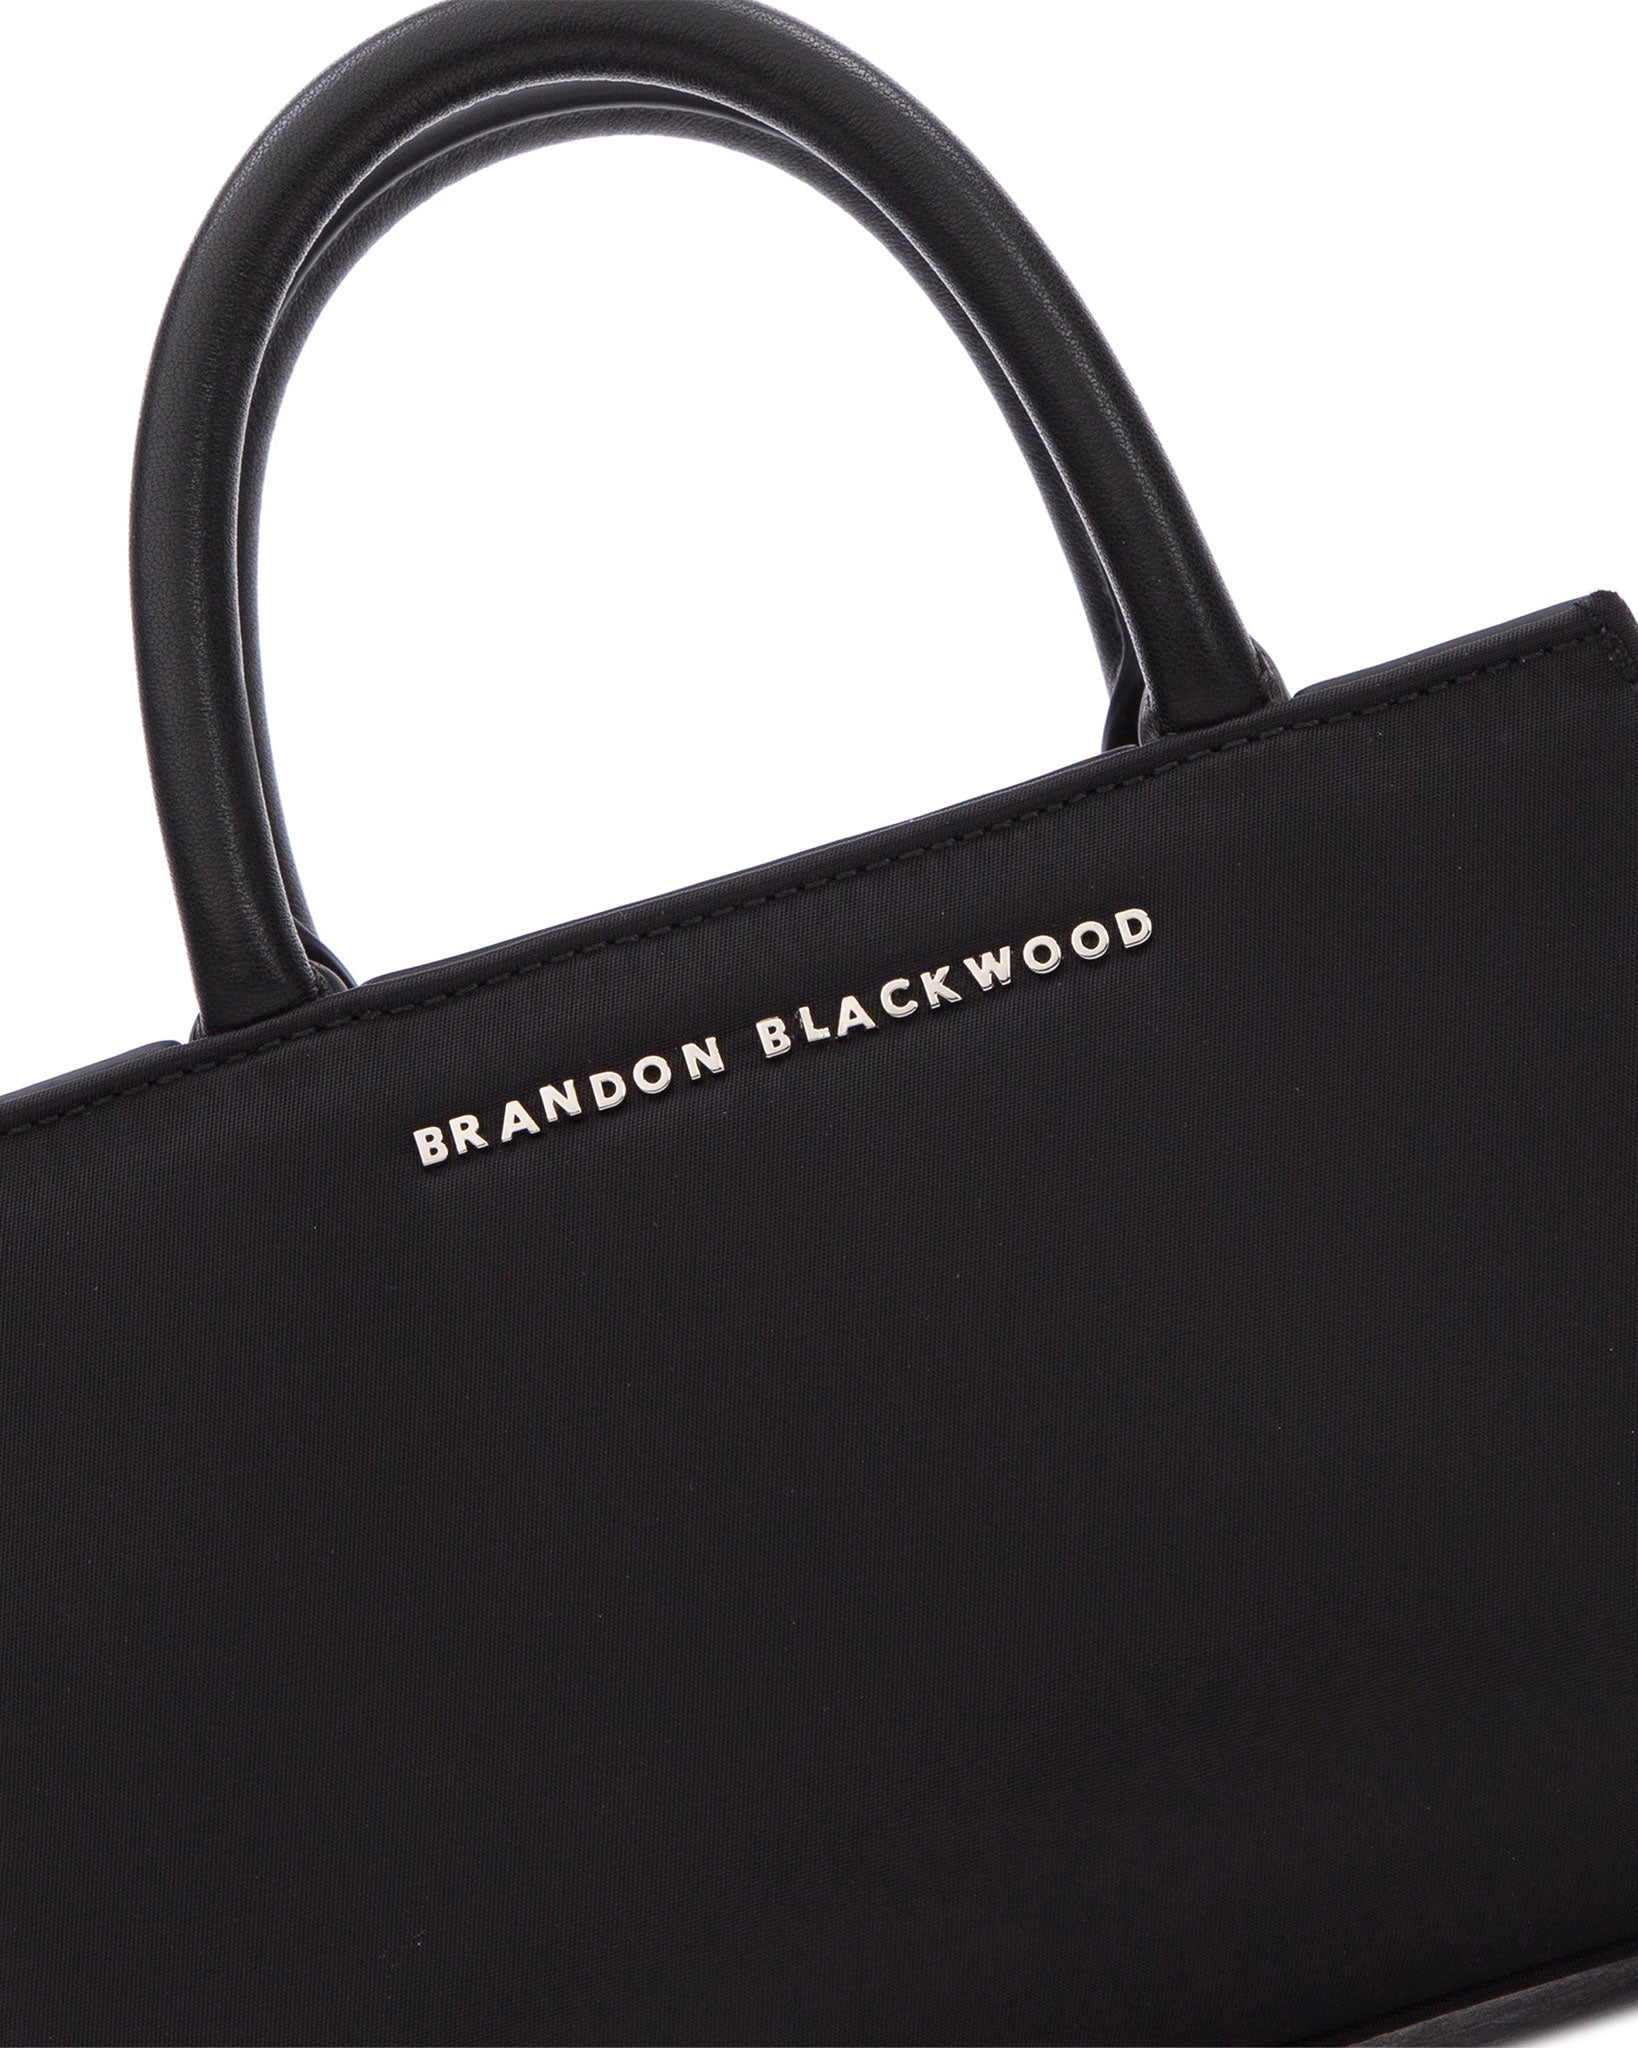 Brandon Blackwood New York - Arlen Bag - Black Nylon